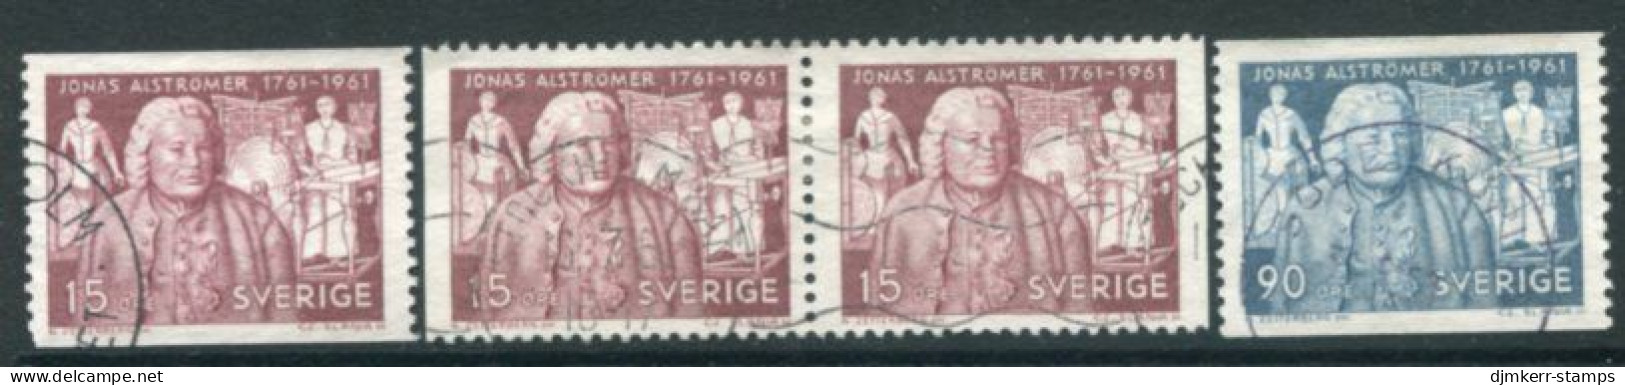 SWEDEN 1961 Alströmer Bicentenary Used.  Michel 473-74 - Gebraucht